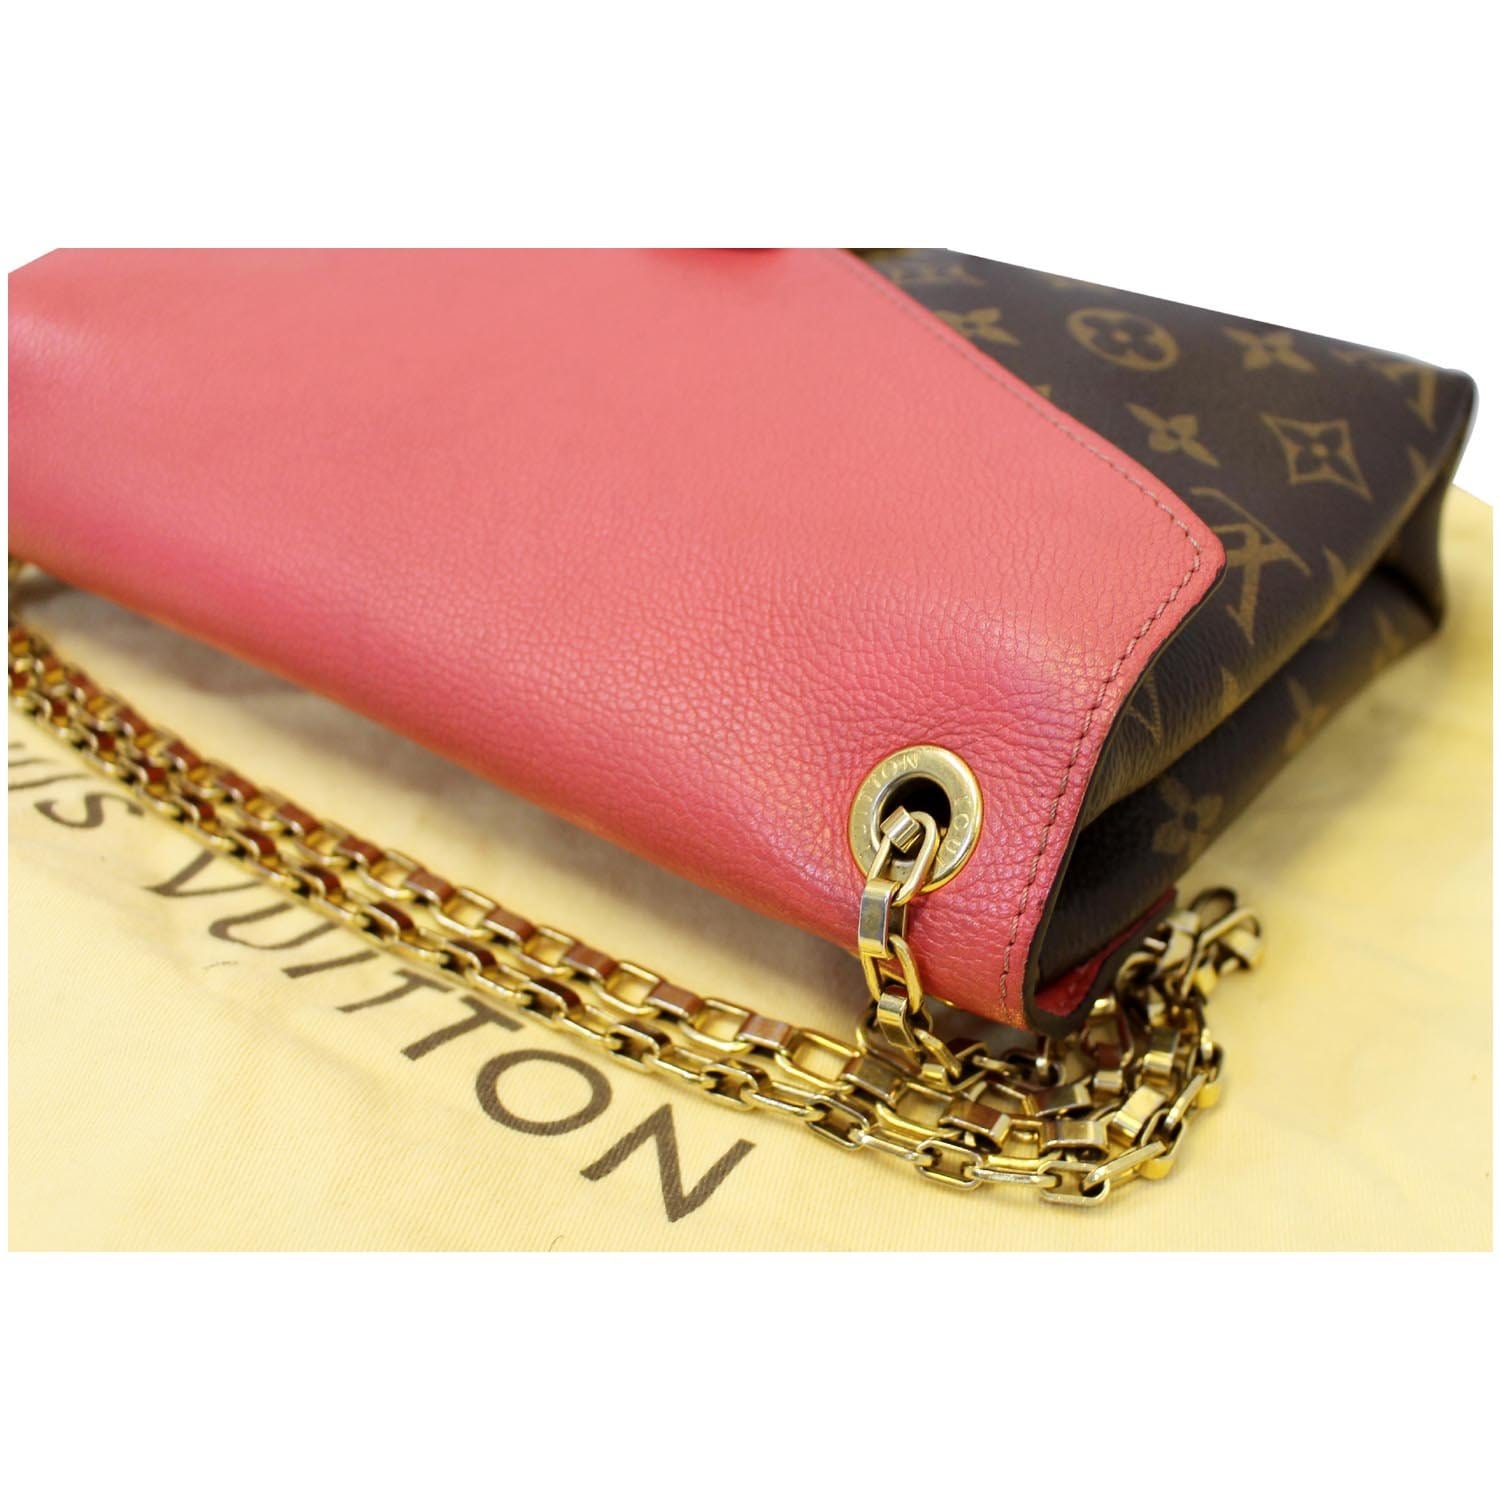 Louis Vuitton - Pallas Chain Shoulder Bag